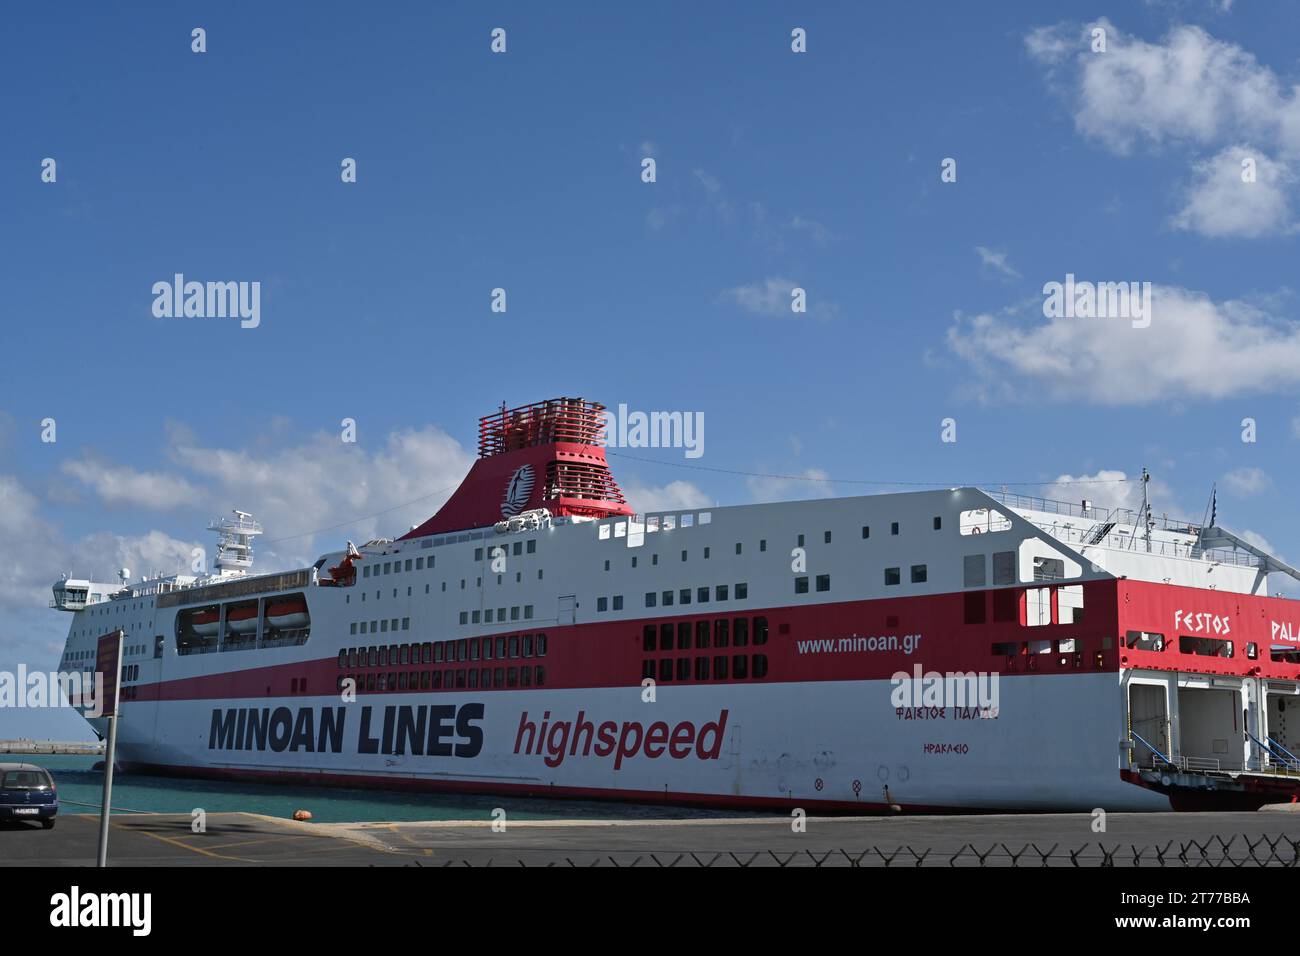 Grand ferry de croisière, Festos Palace, avec coque rouge et blanche est le fleuron des Minoan Lines et est amarré dans le port d'Héraklion en Crète. Banque D'Images